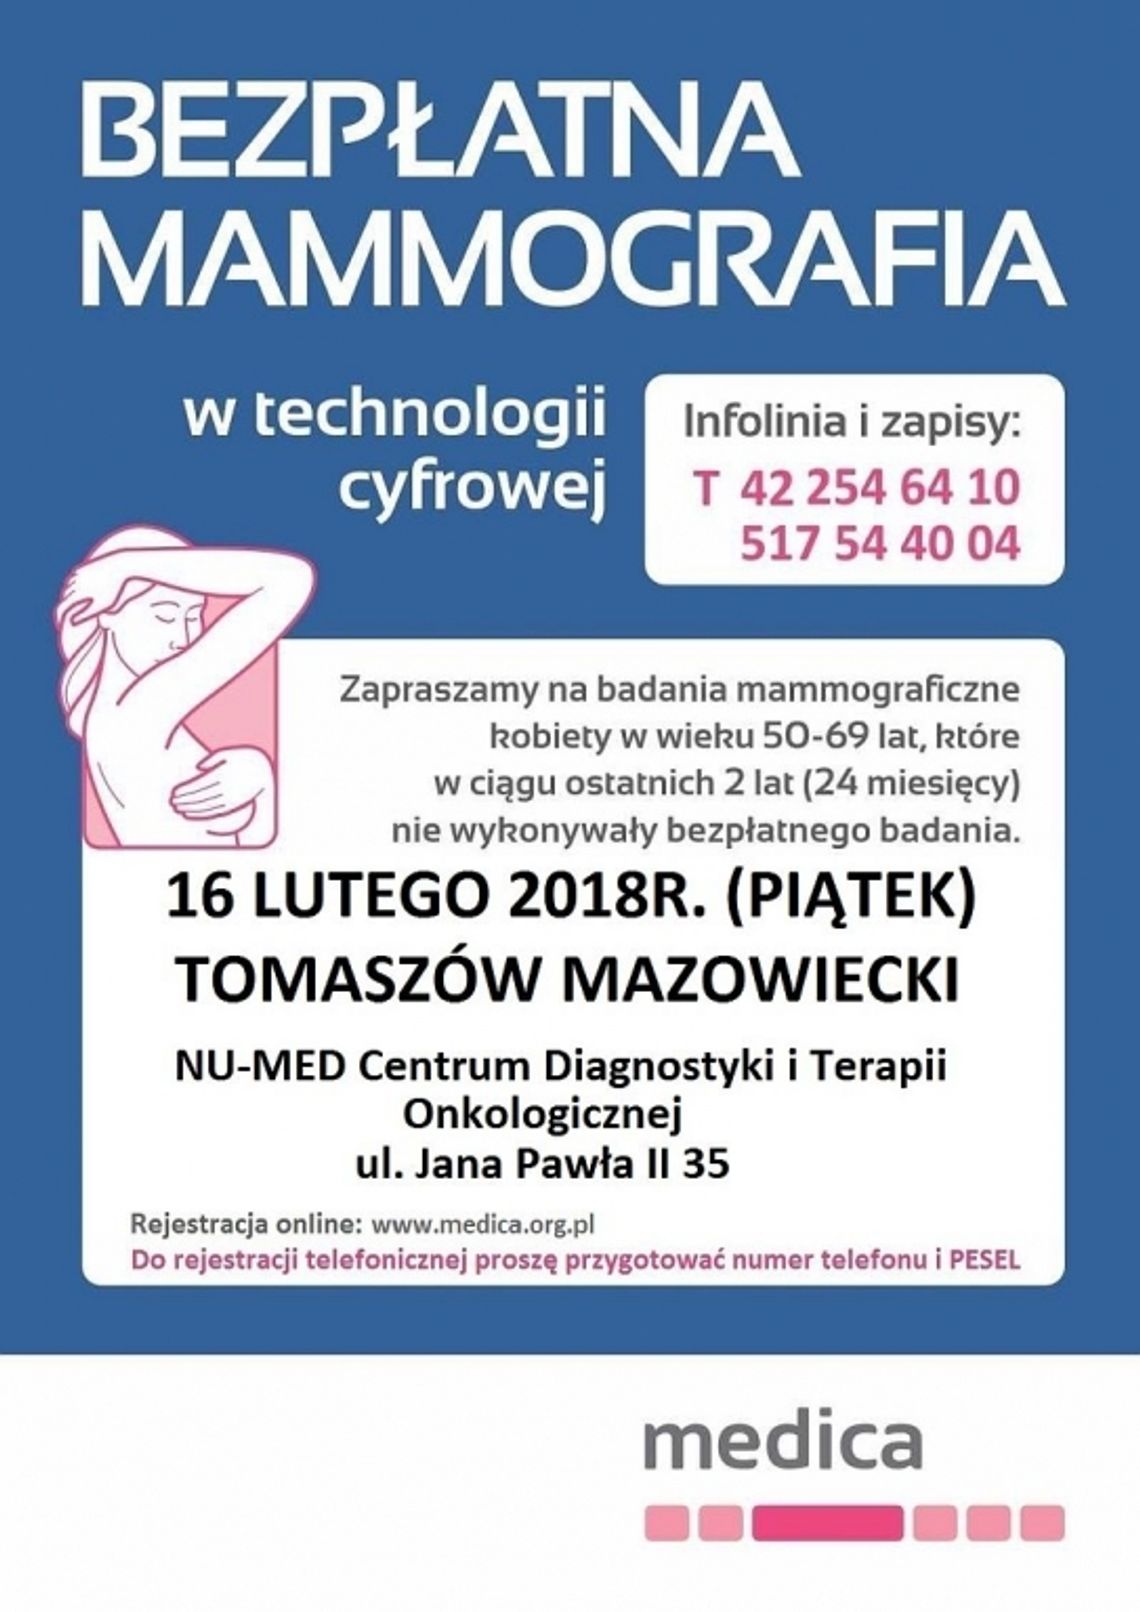 Bezpłatna mammografia w technologii cyfrowej